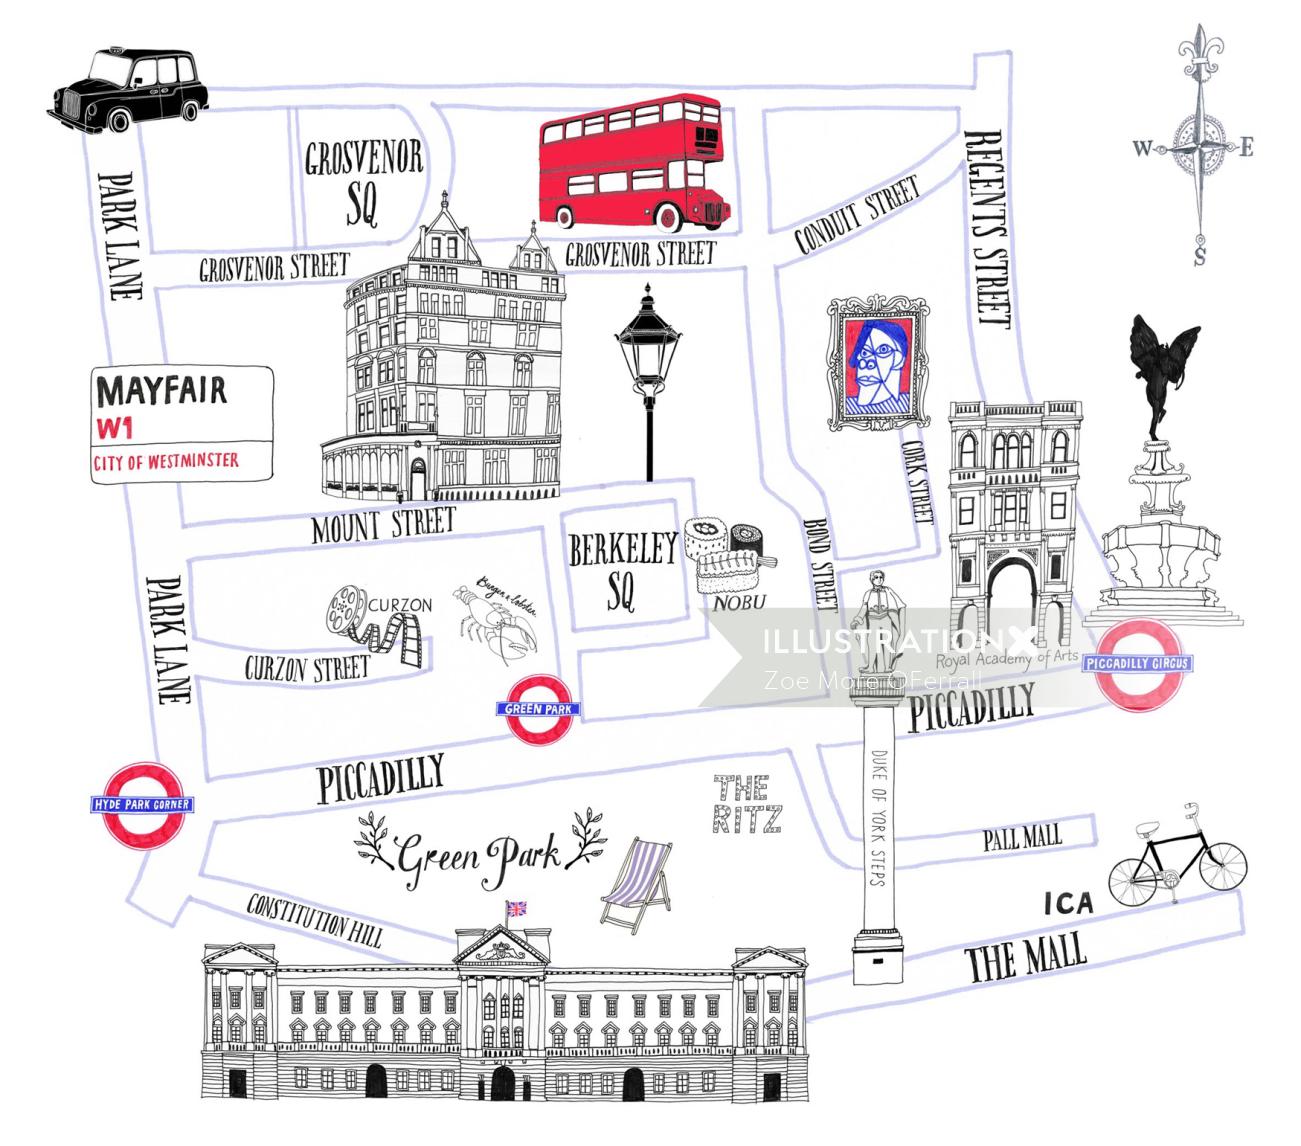 Mayfair Street Map
